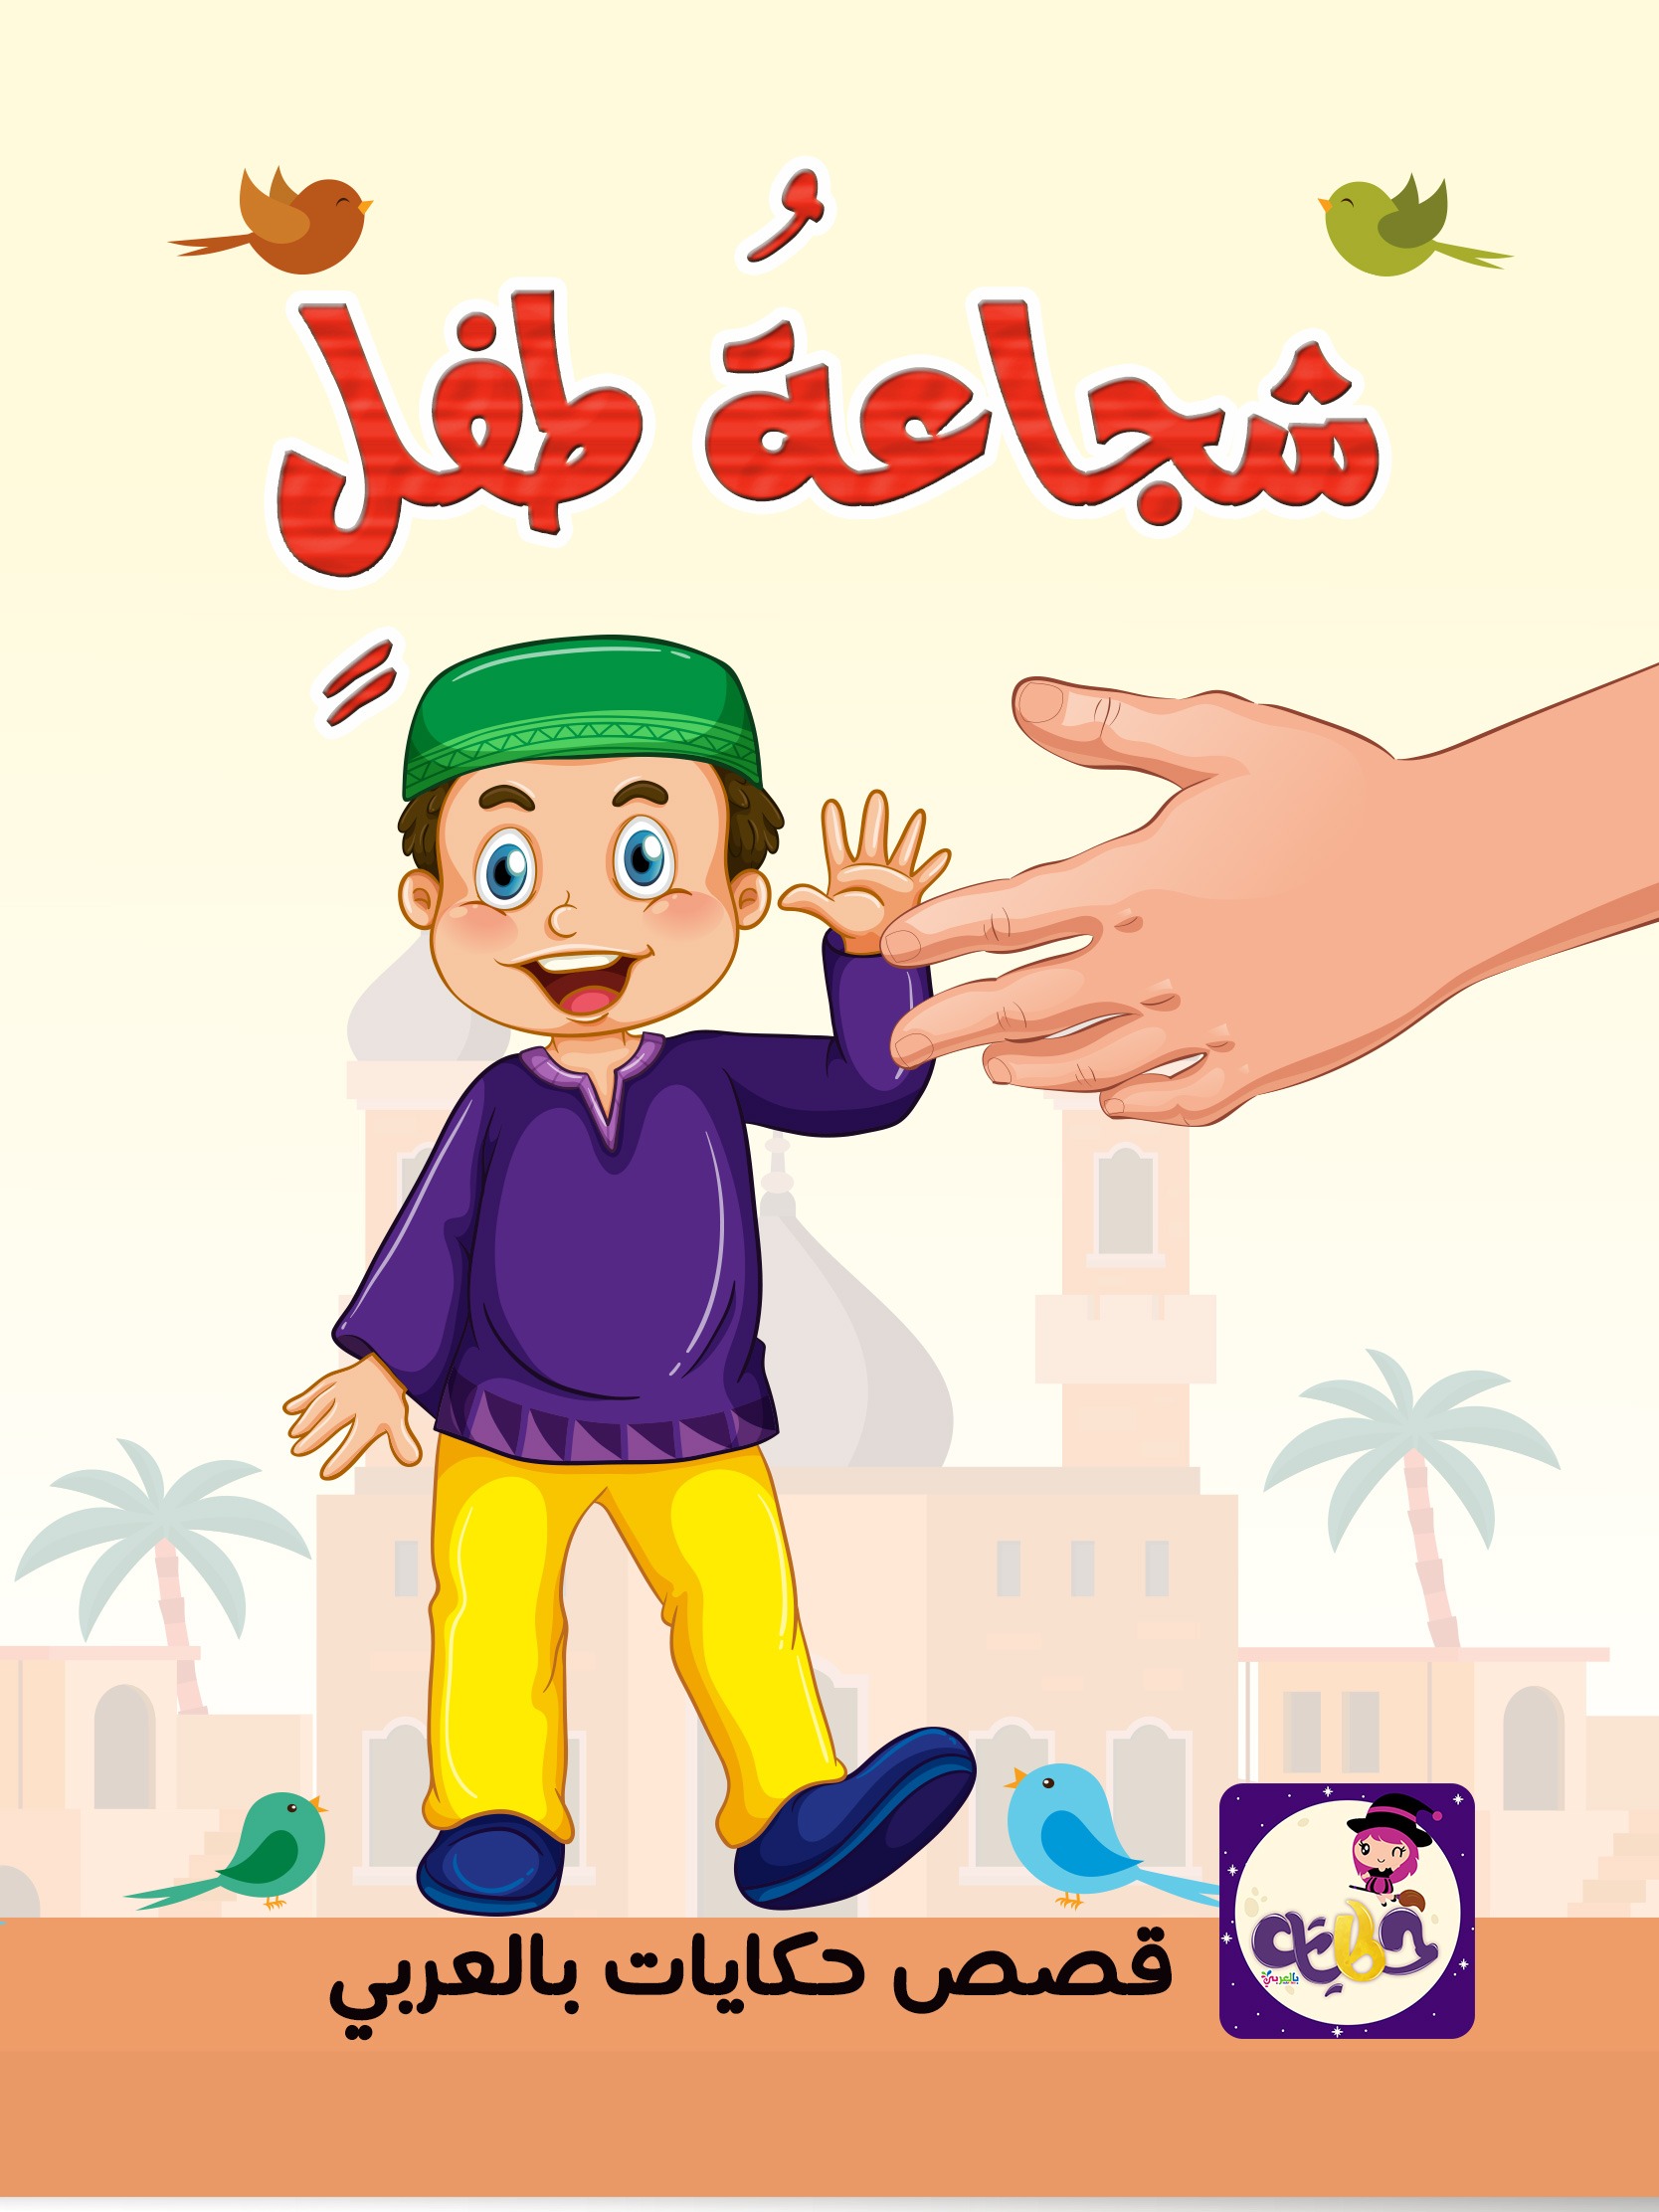 قصة شجاعة طفل قصة عن الشجاعة للاطفال تطبيق قصص وحكايات بالعربي